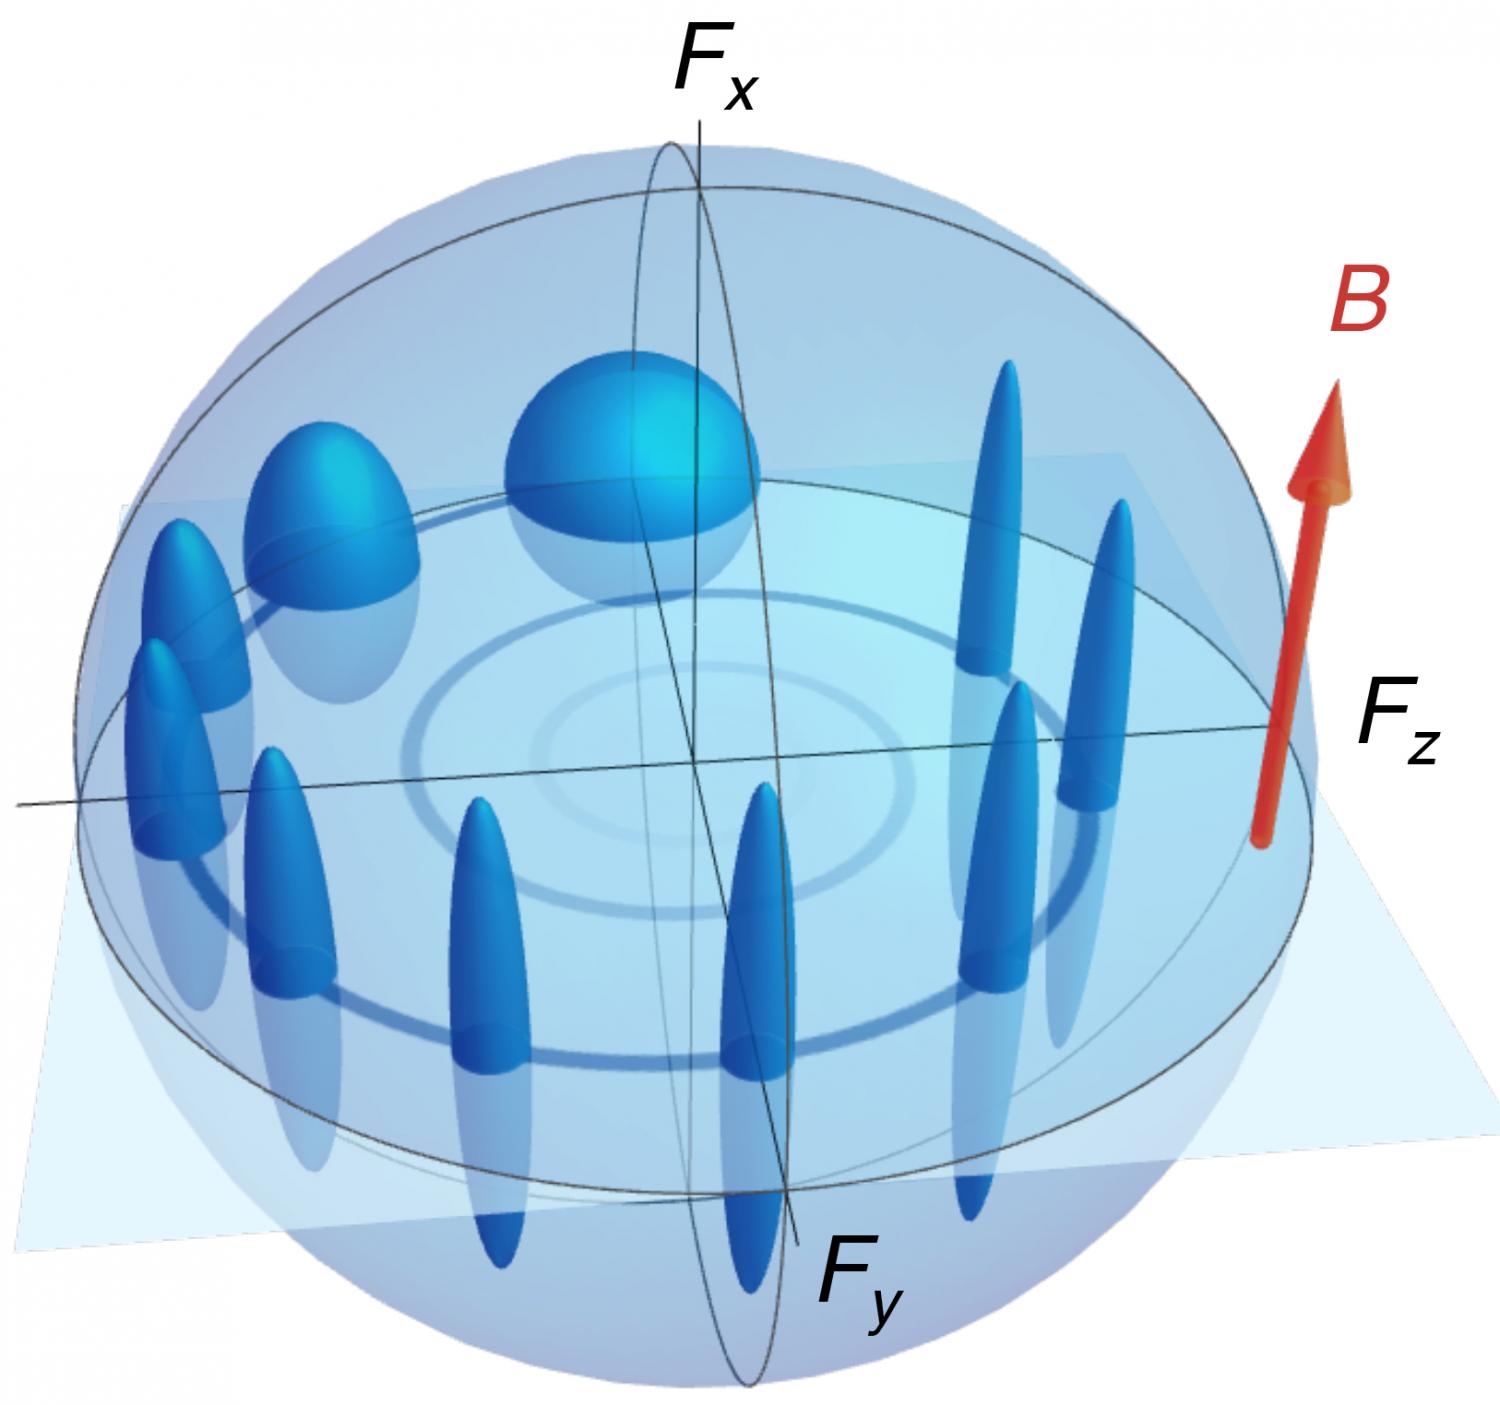 heisenberg uncertainty principle diagram